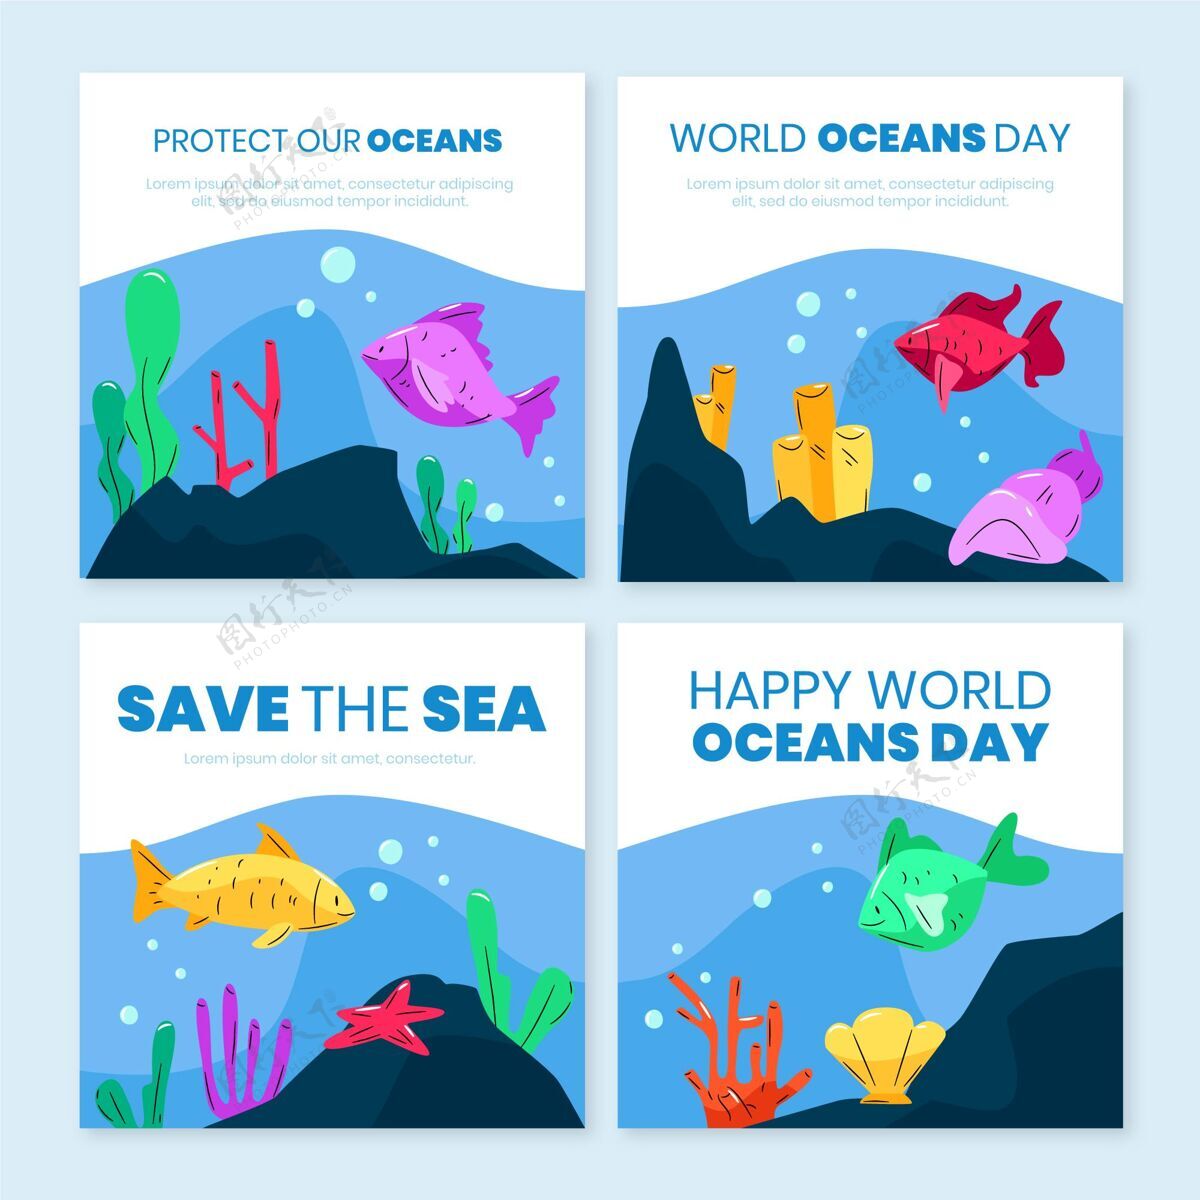 生态系统手绘世界海洋日instagram帖子集社交媒体发布星球活动